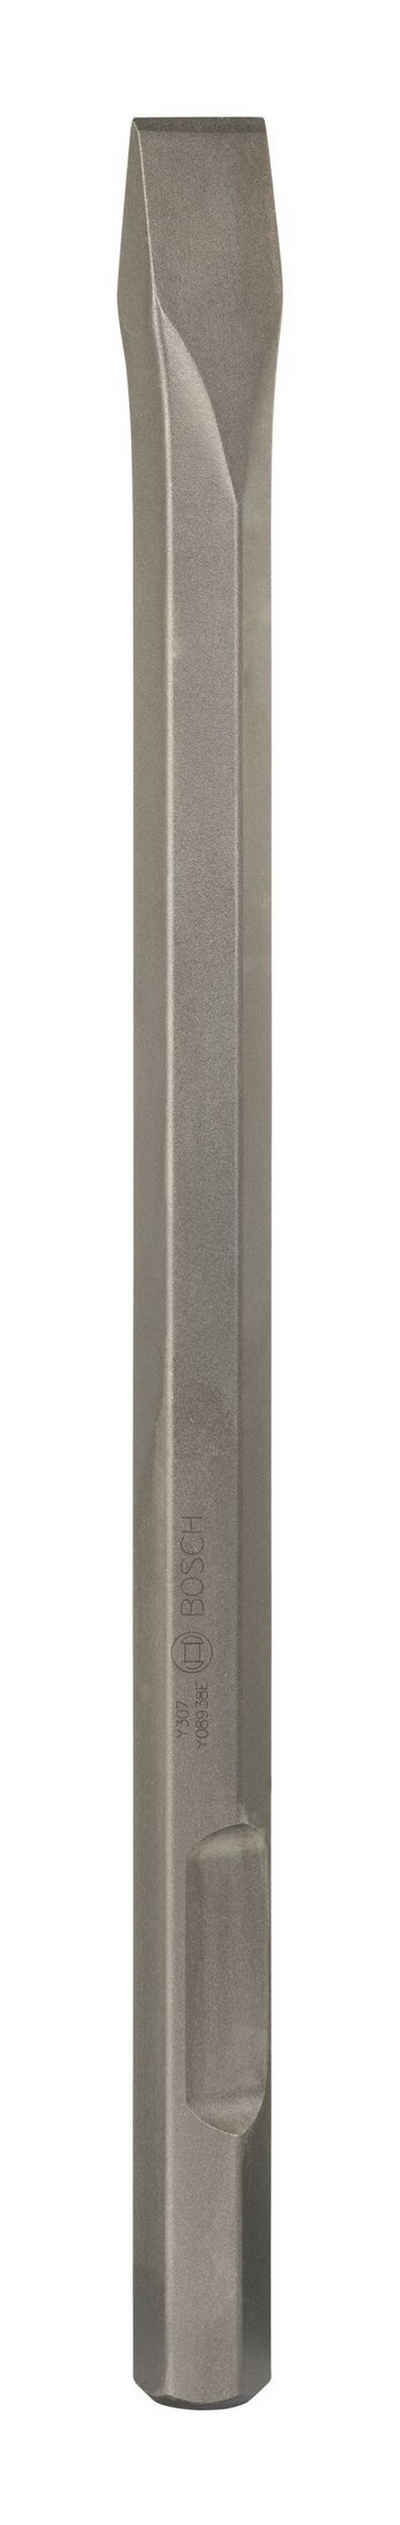 BOSCH Steinbohrer, Flachmeißel mit 28-mm-Sechskantaufnahme - 520 x 36 mm